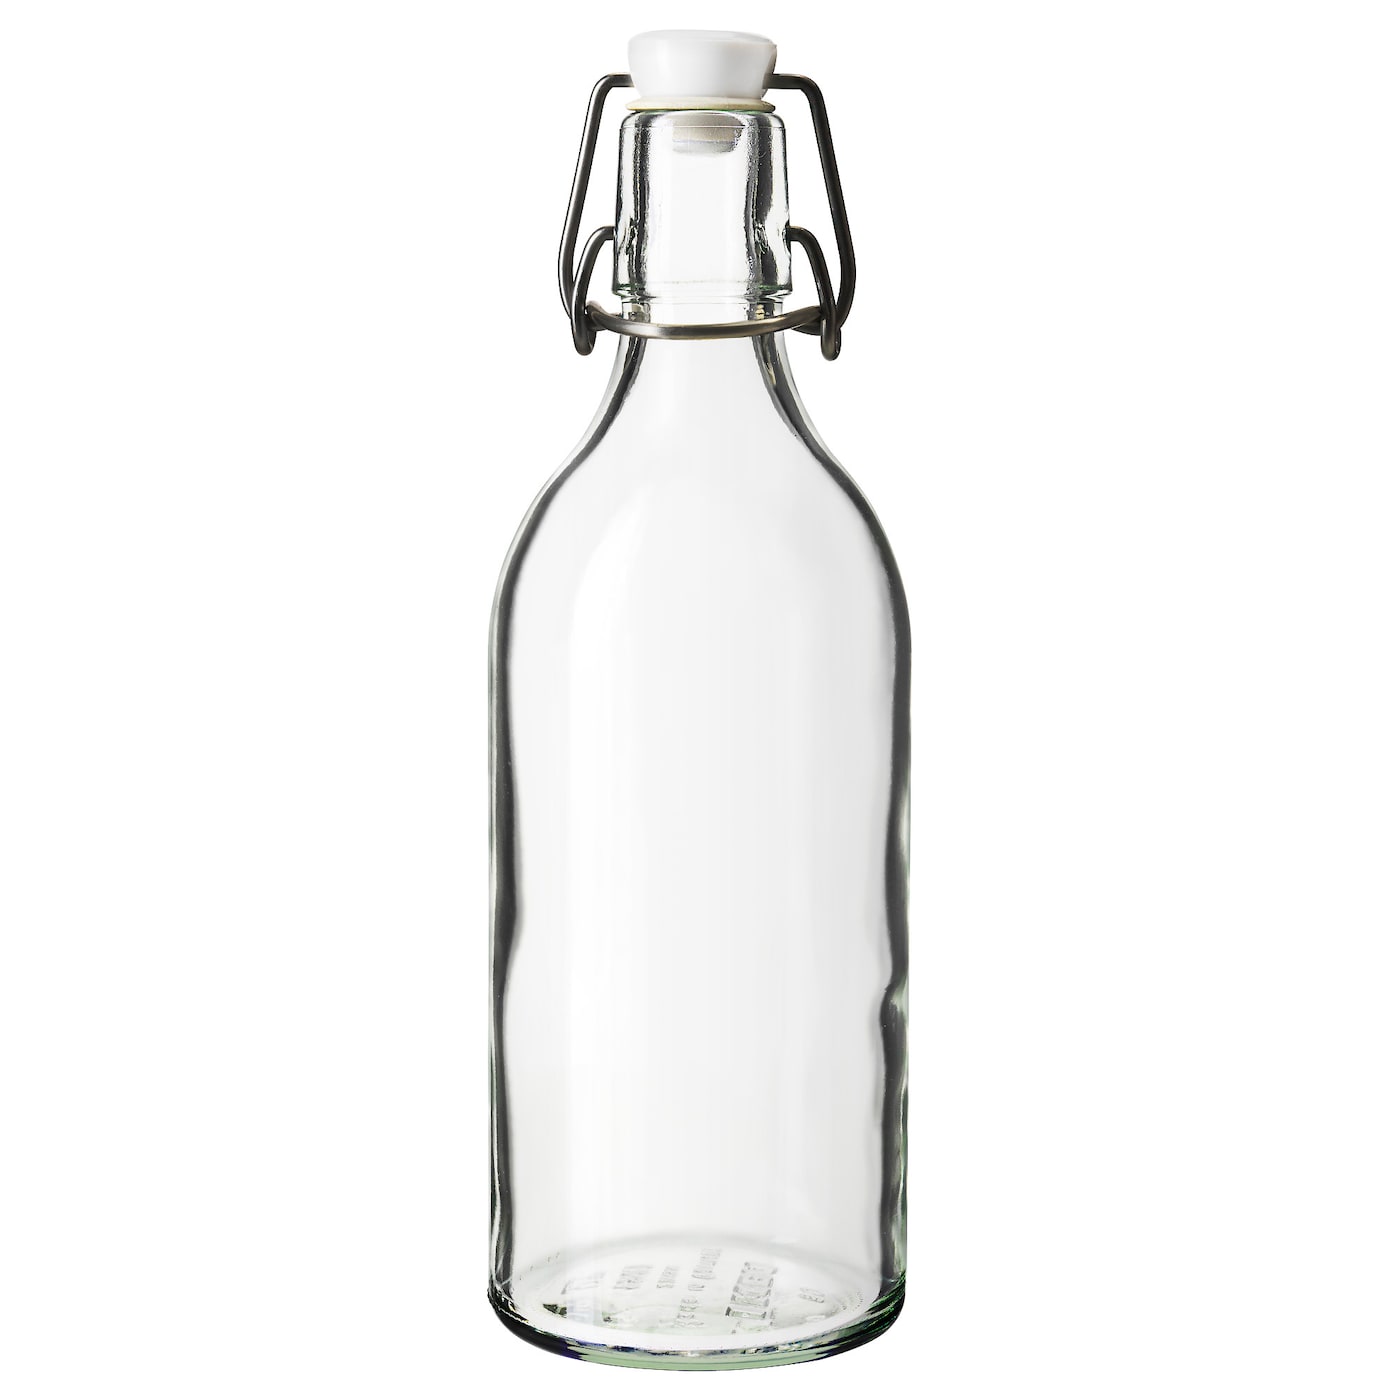 Бутылка с крышкой - IKEA KORKEN, 0.5 л, стекло, КОРКЕН ИКЕА